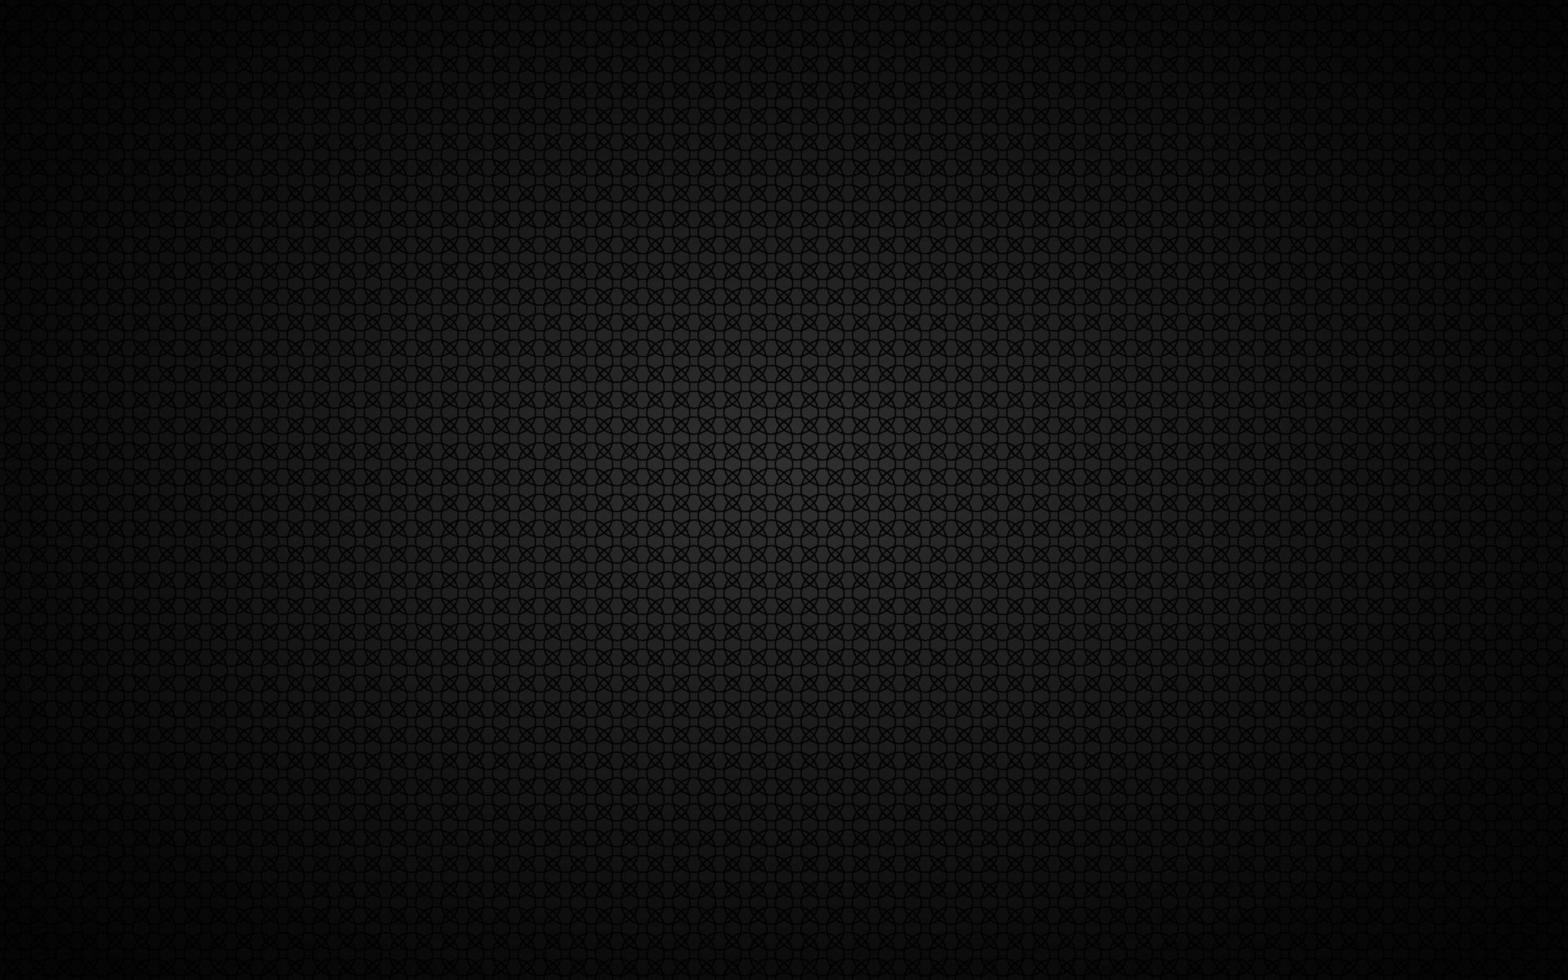 sfondo widescreen scuro con semplici cerchi neri. moderno design geometrico nero. semplice illustrazione vettoriale